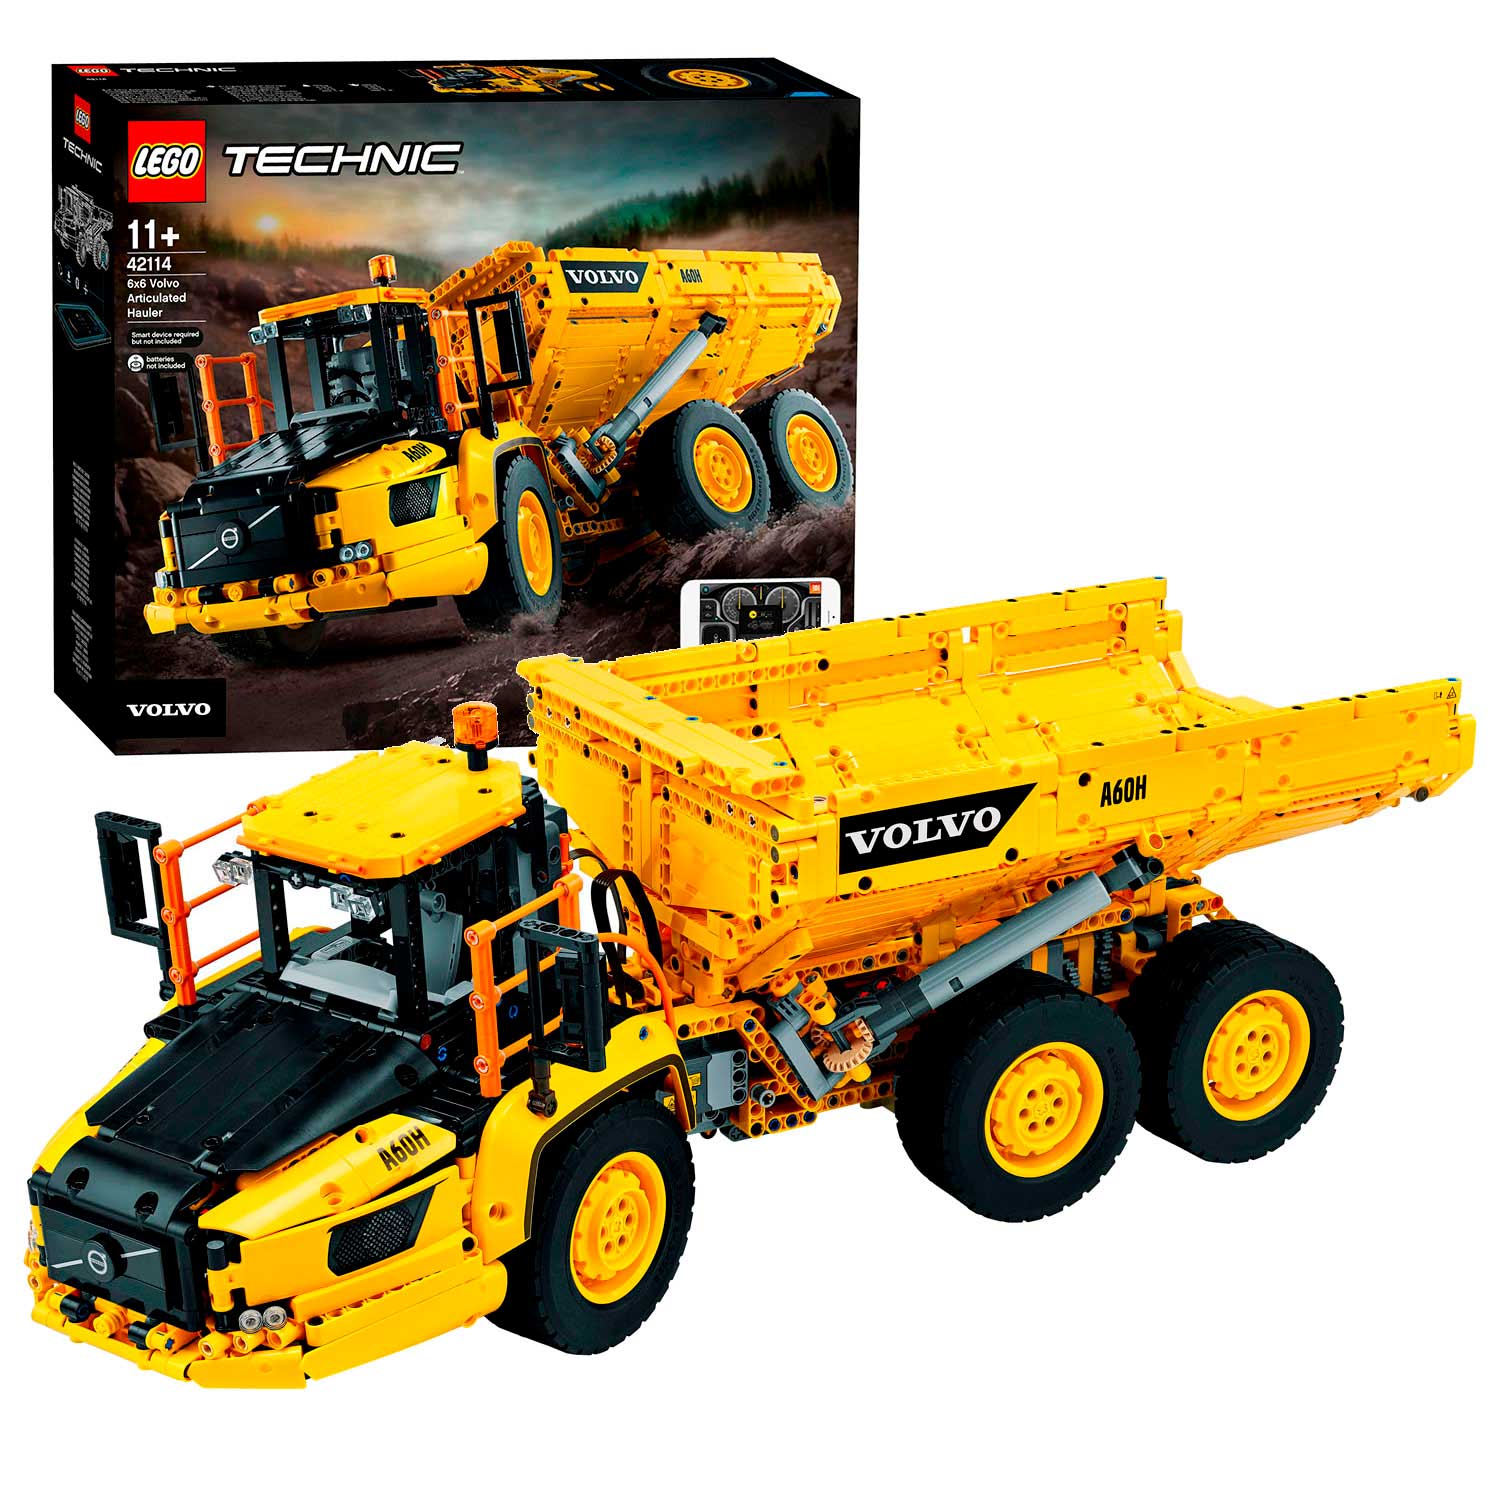 LEGO Technic 42114 Volvo 6x6 Truck met Kieptrailer